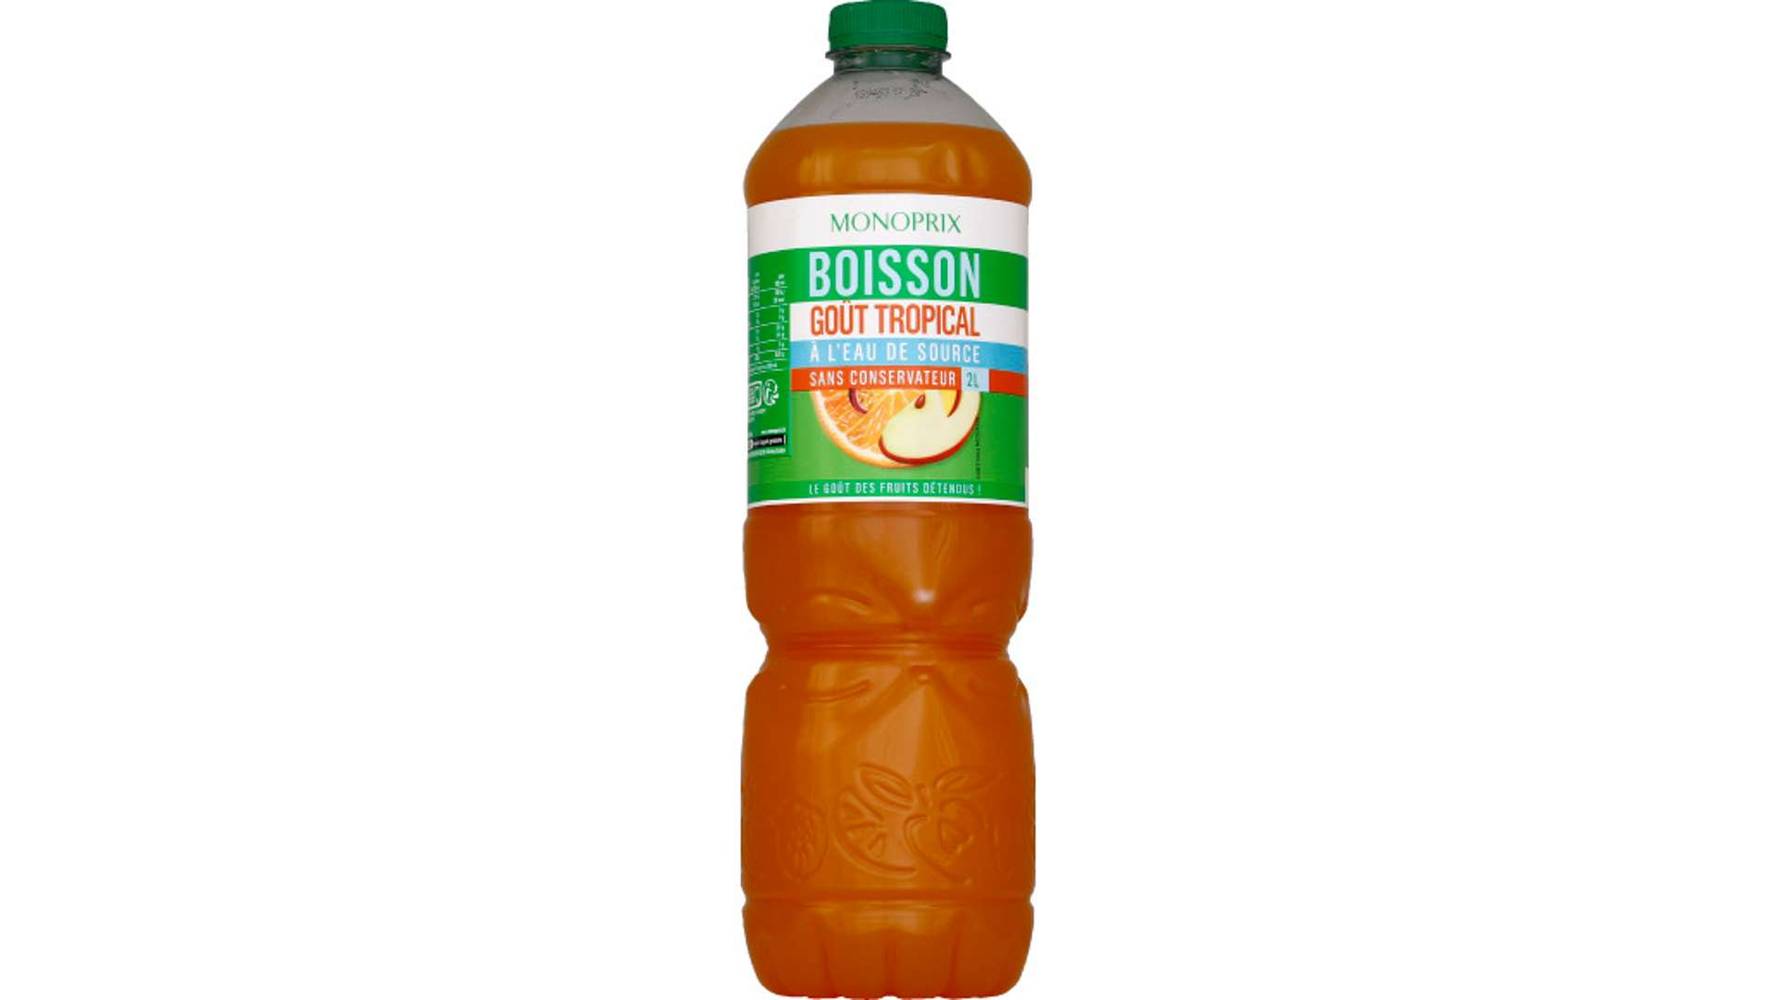 Monoprix Boisson goût tropical à l'eau de source La bouteille de 2 l